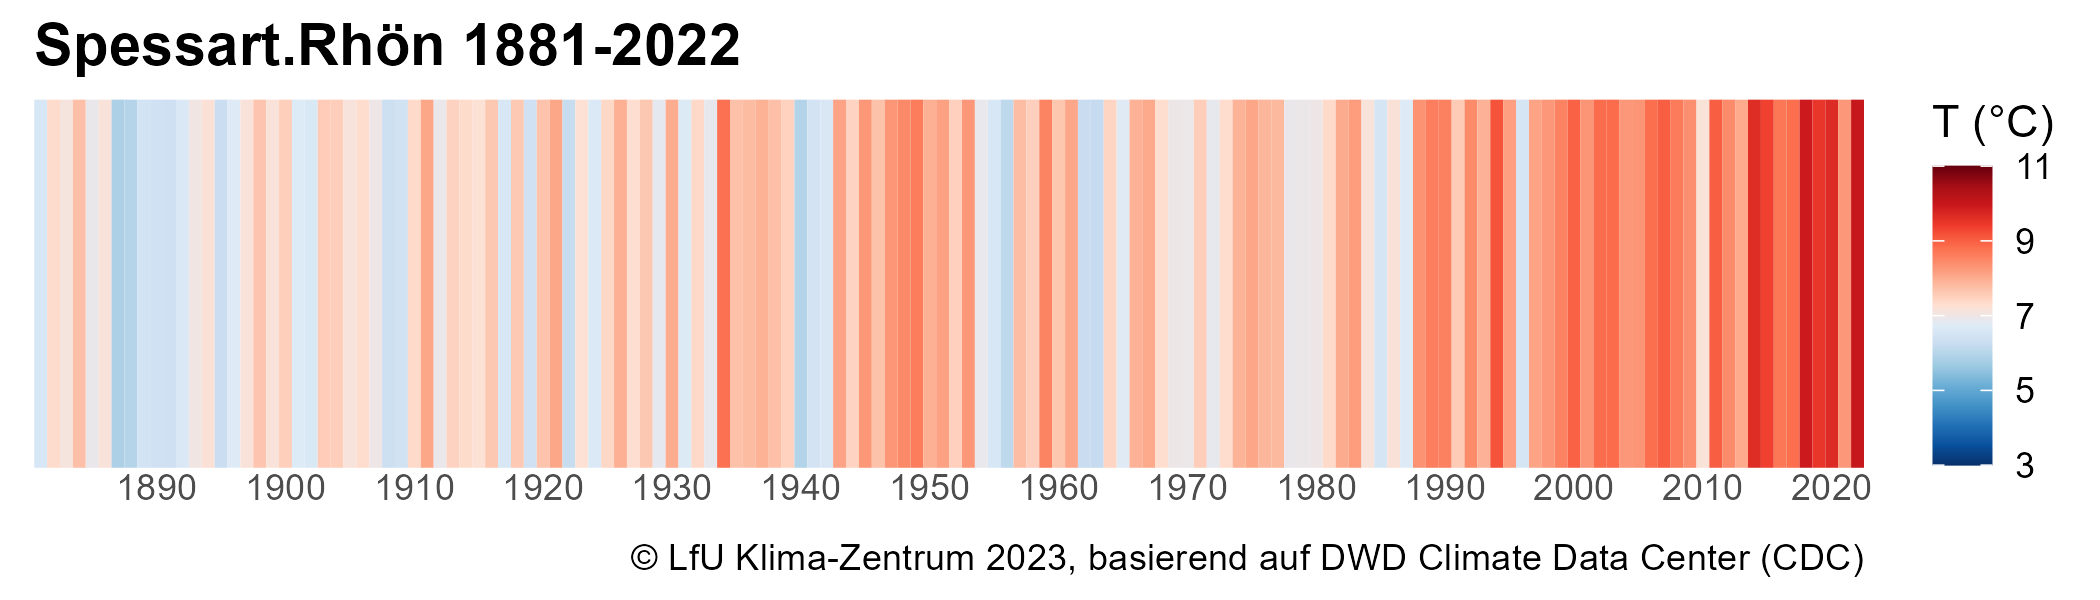 Warming Stripes für die Bayerischen Klimaregionen.